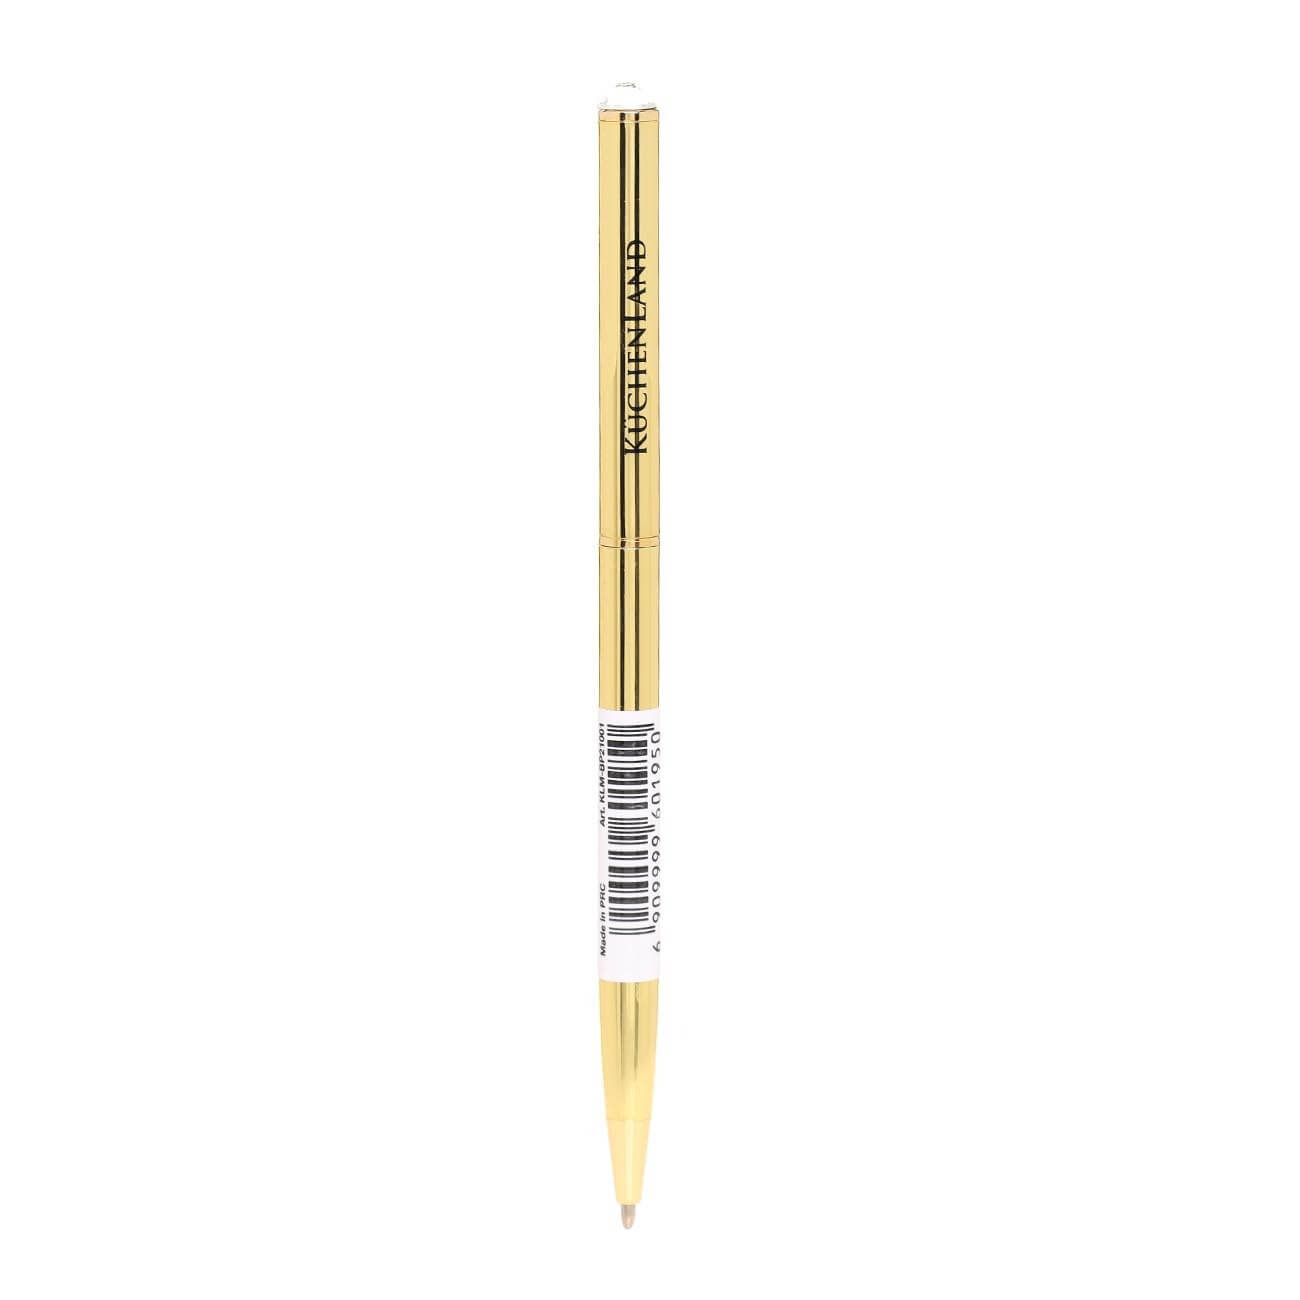 Ручка шариковая, 13 см, с кристаллом, металл, золотистая, Draw brass ballpoint ручка